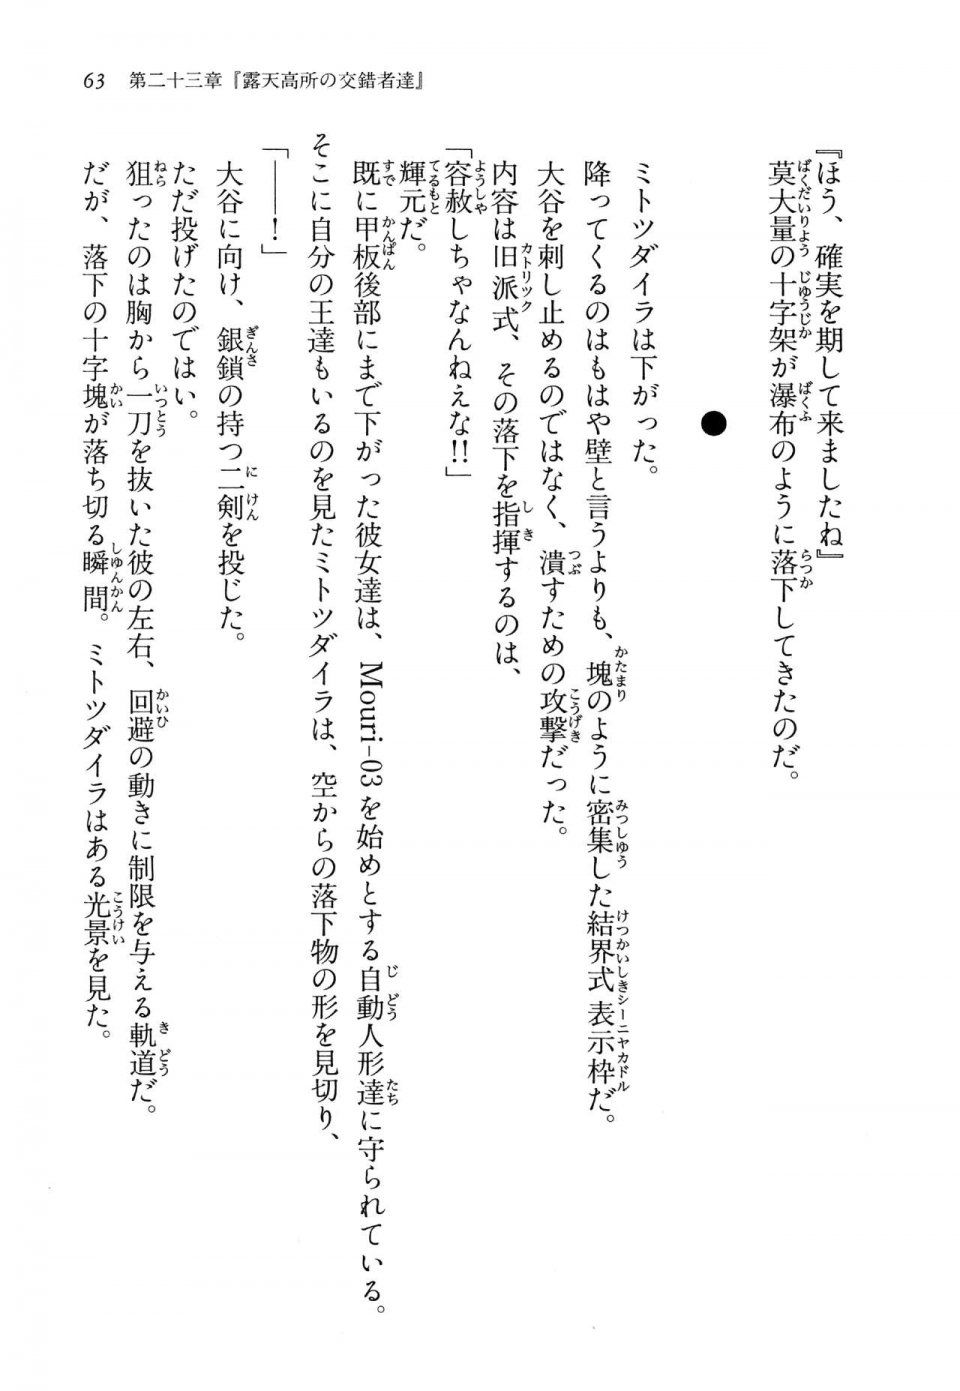 Kyoukai Senjou no Horizon LN Vol 14(6B) - Photo #63